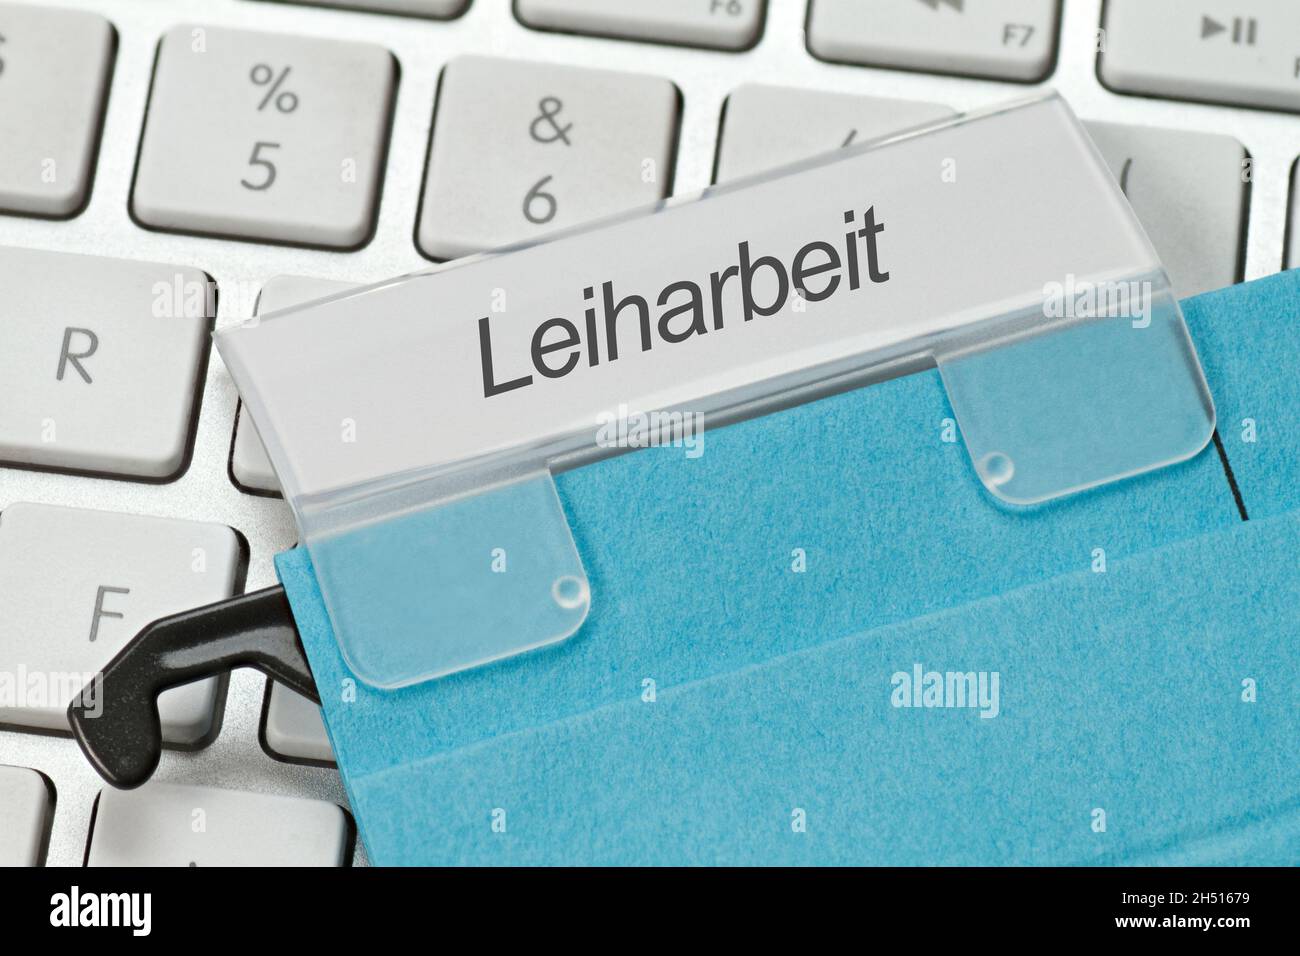 Le mot allemand pour le travail temporaire est écrit sur un onglet d'un fichier suspendu.Se trouve sur un clavier blanc d'ordinateur Banque D'Images